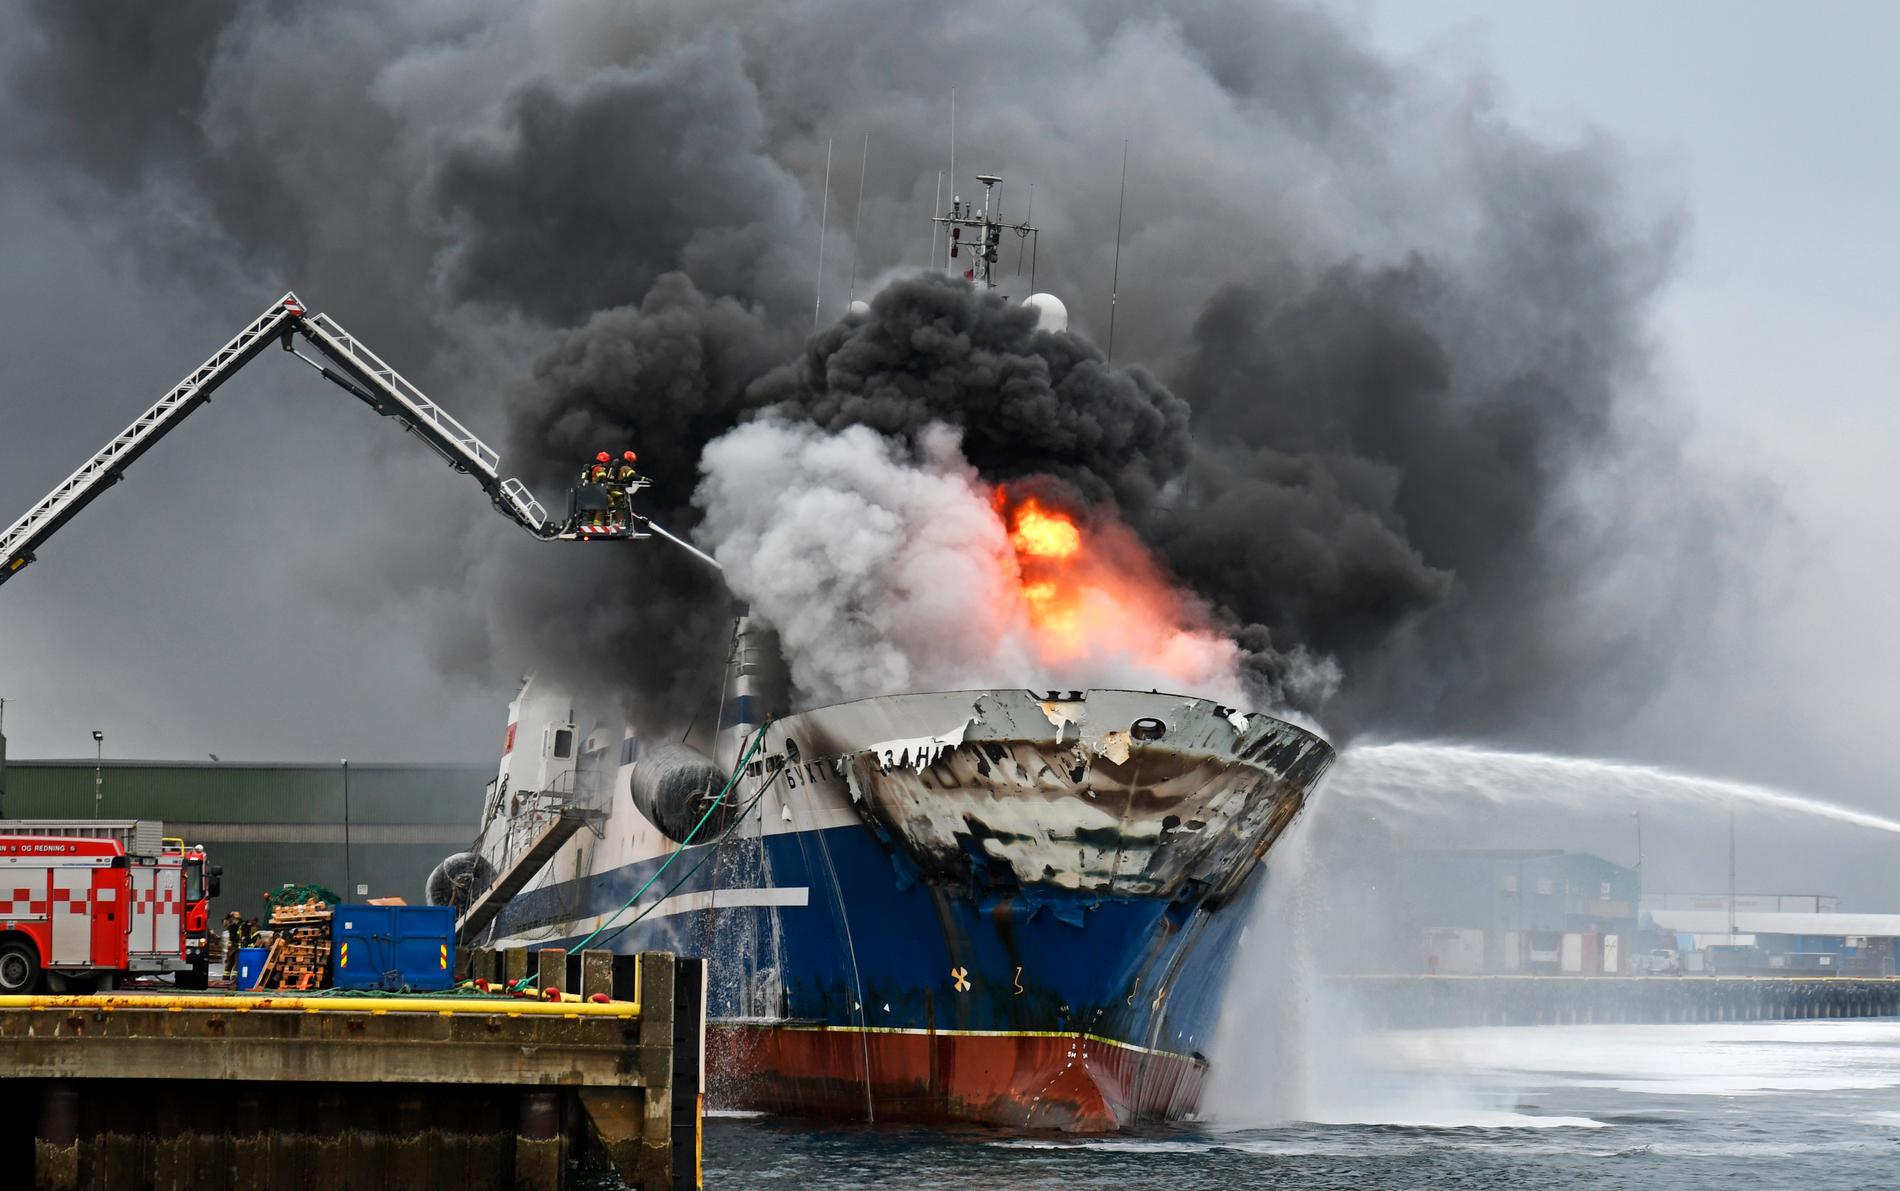 Det brinner kraftigt ombord på en trålare i norska Tromsø.